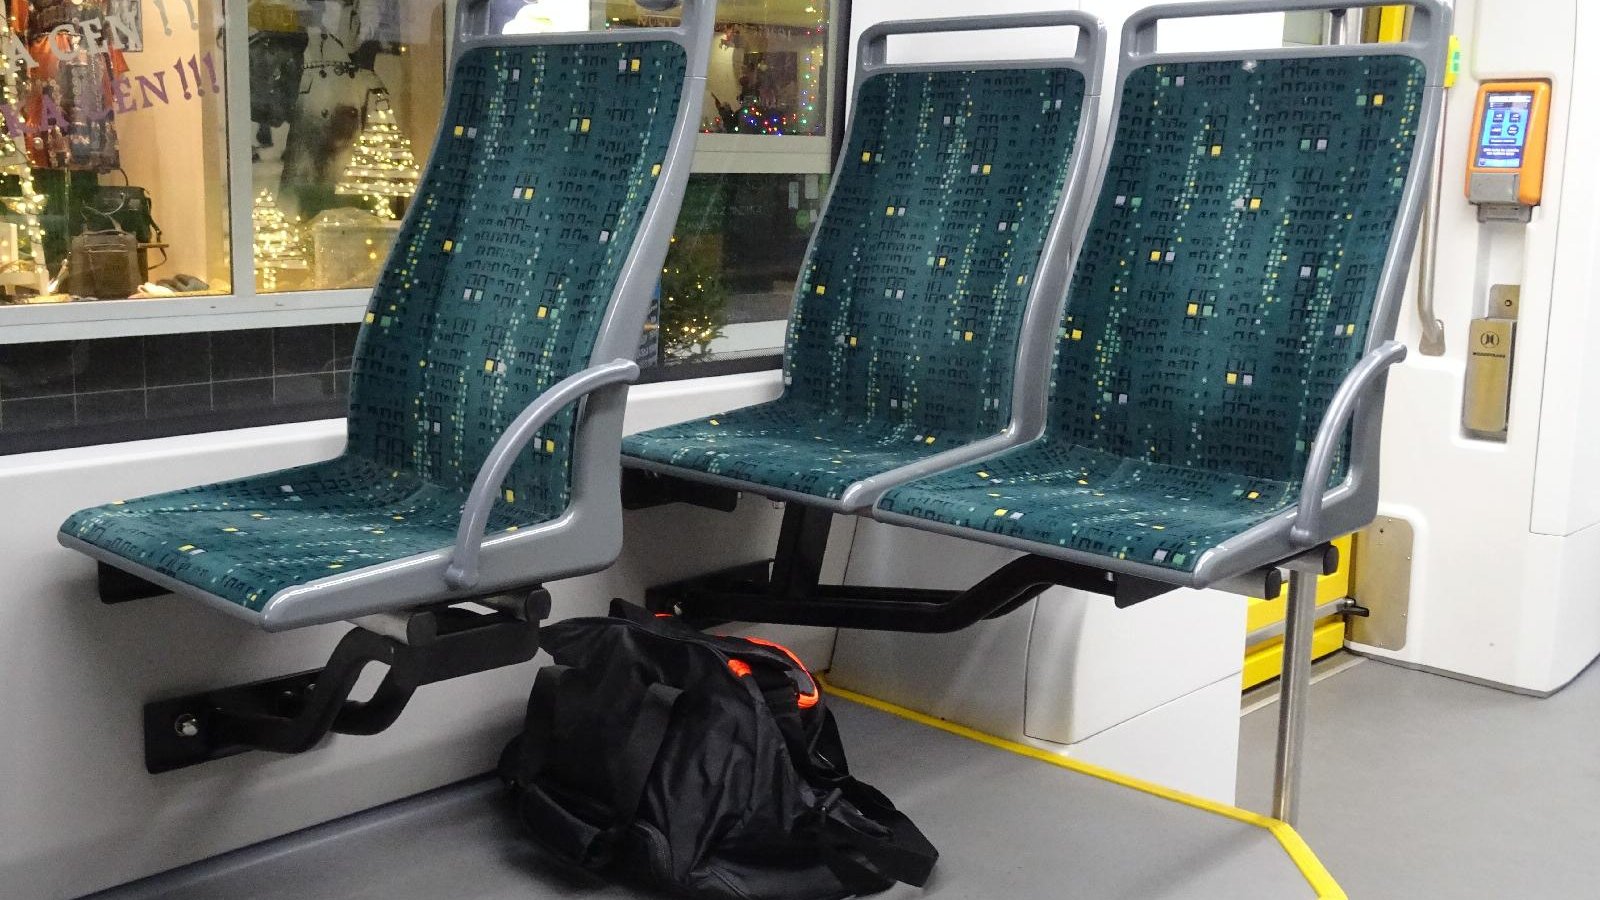 Torba zostawiona w tramwaju między siedzeniami